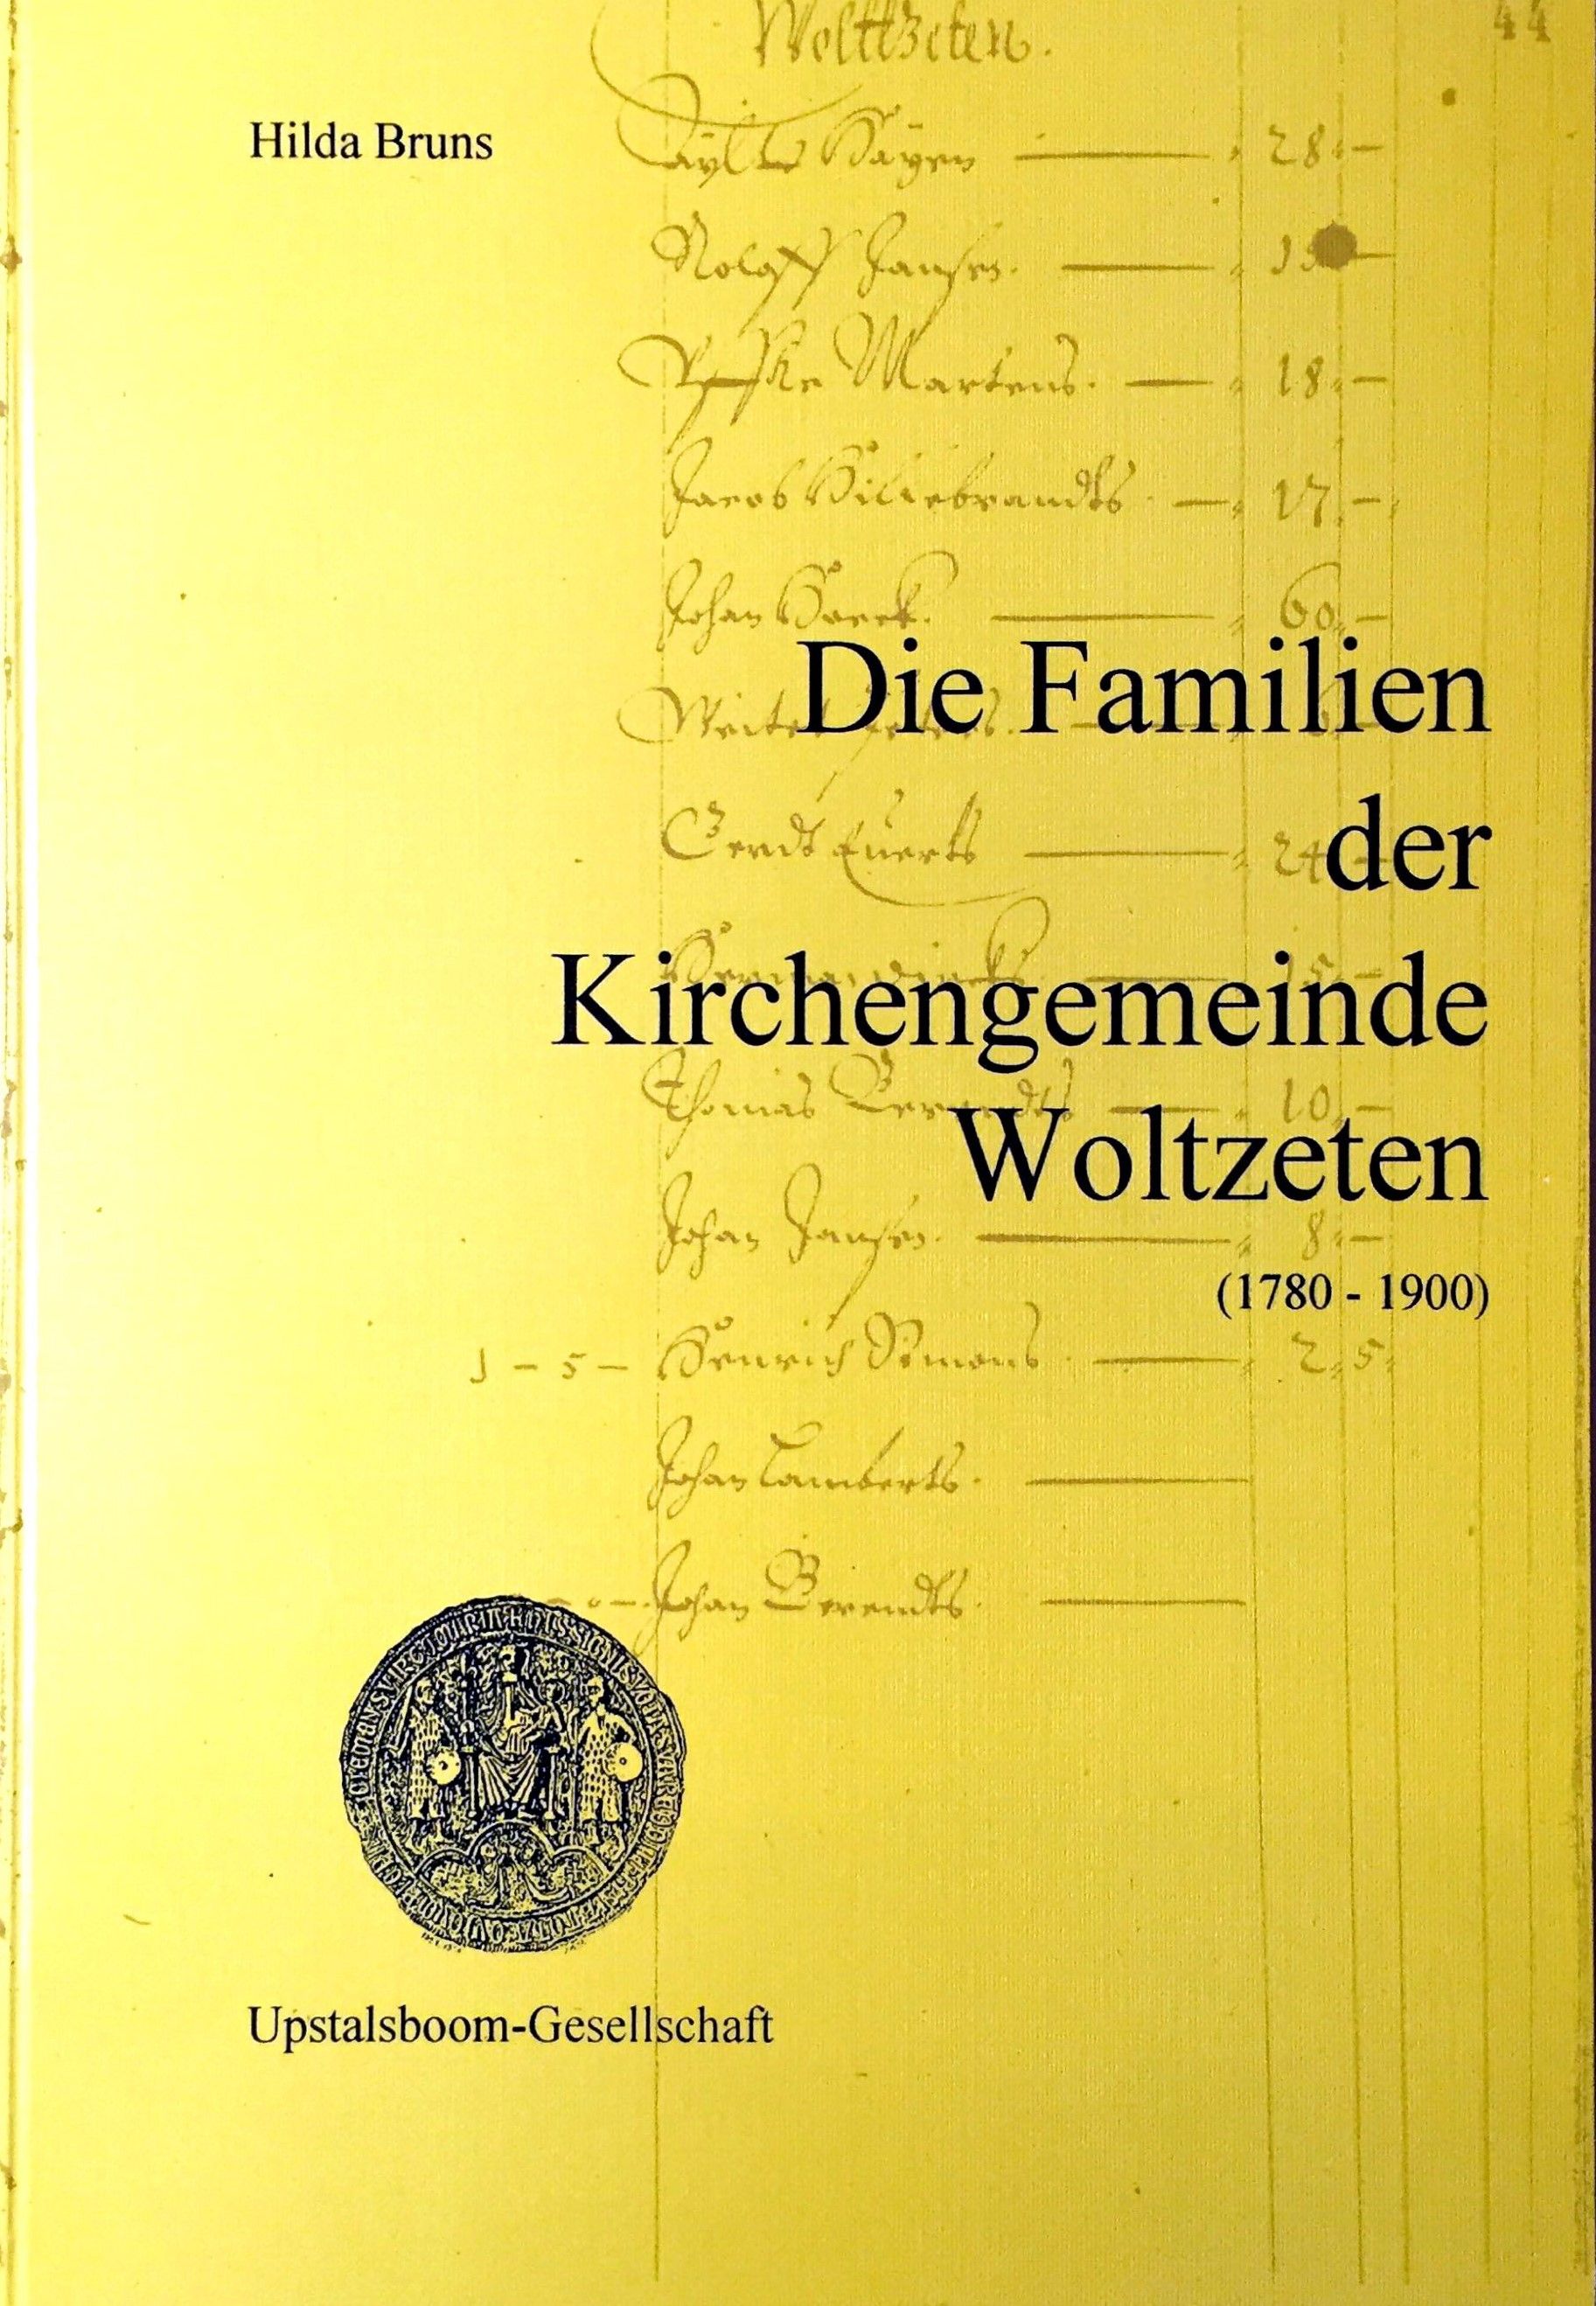 Die Familien der Kirchengemeinde Woltzeten (1780 -1900) - (= Ostfrieslands Ortssippenbücher, Band 48) - Bruns, Hilda